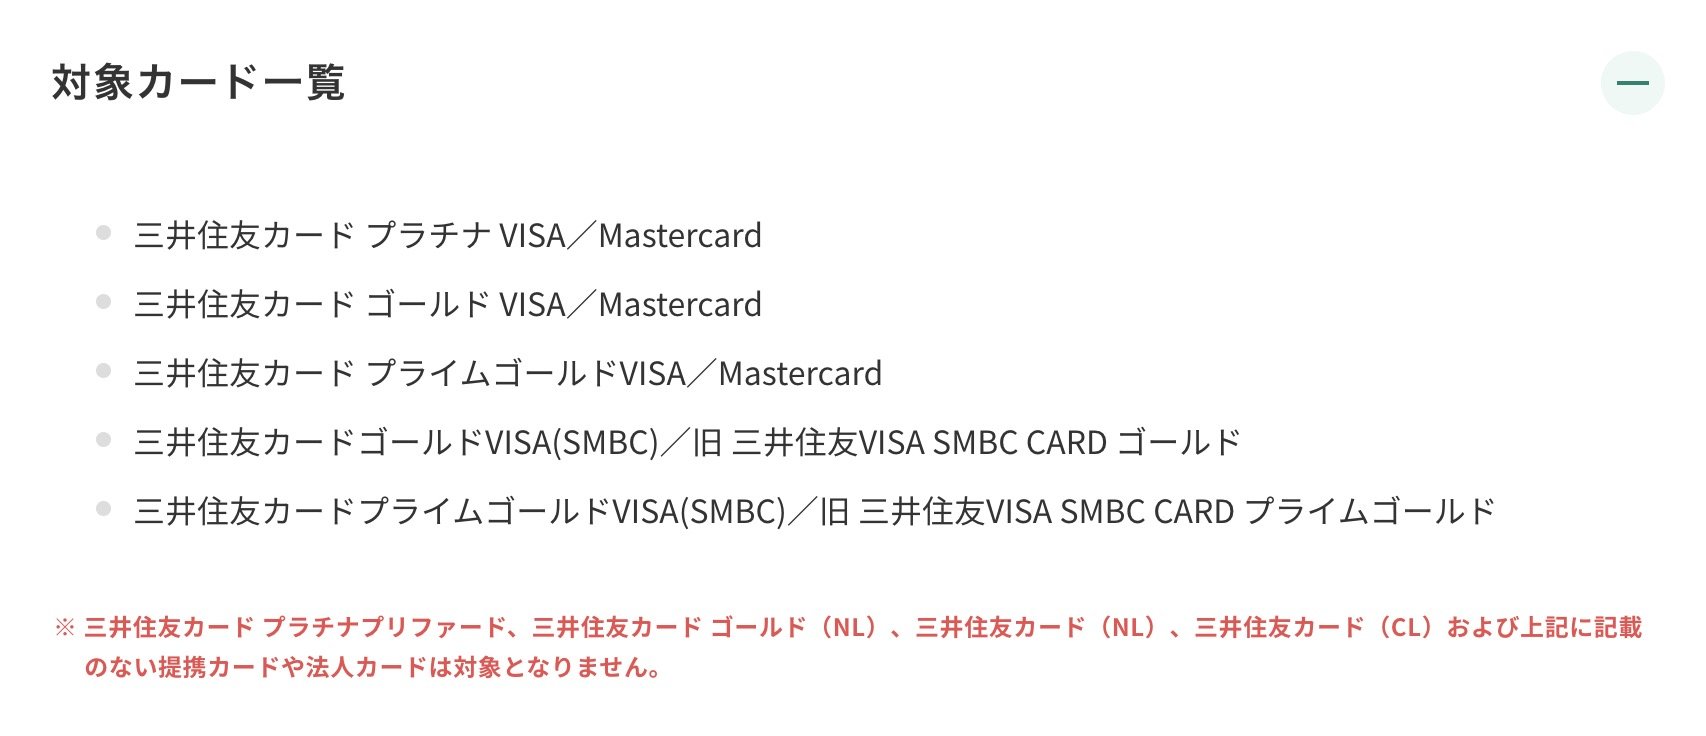 三井住友カード、50万円ごとに2500ポイントを付与する年間利用ボーナス開始